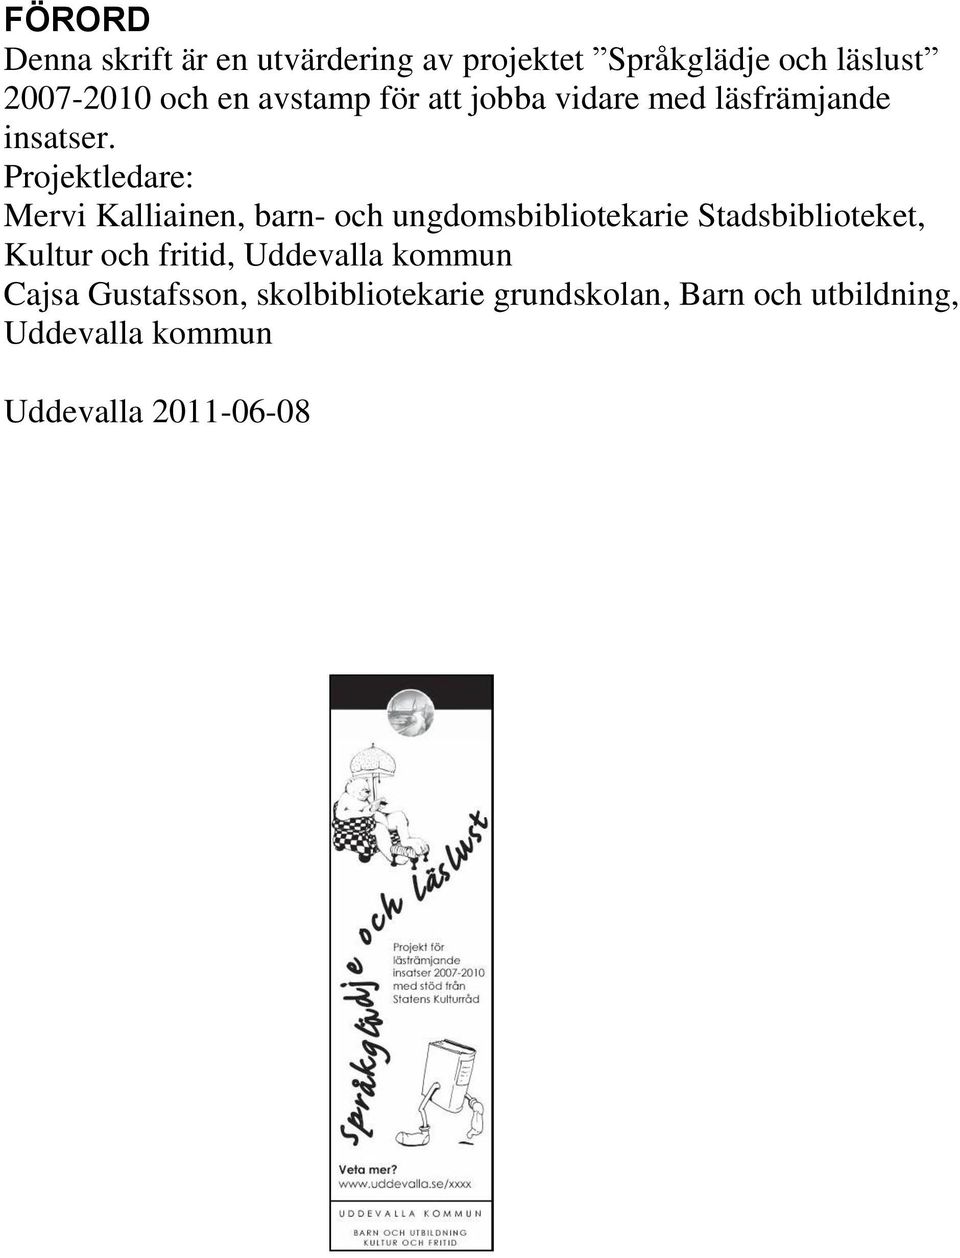 Projektledare: Mervi Kalliainen, barn- och ungdomsbibliotekarie Stadsbiblioteket, Kultur och